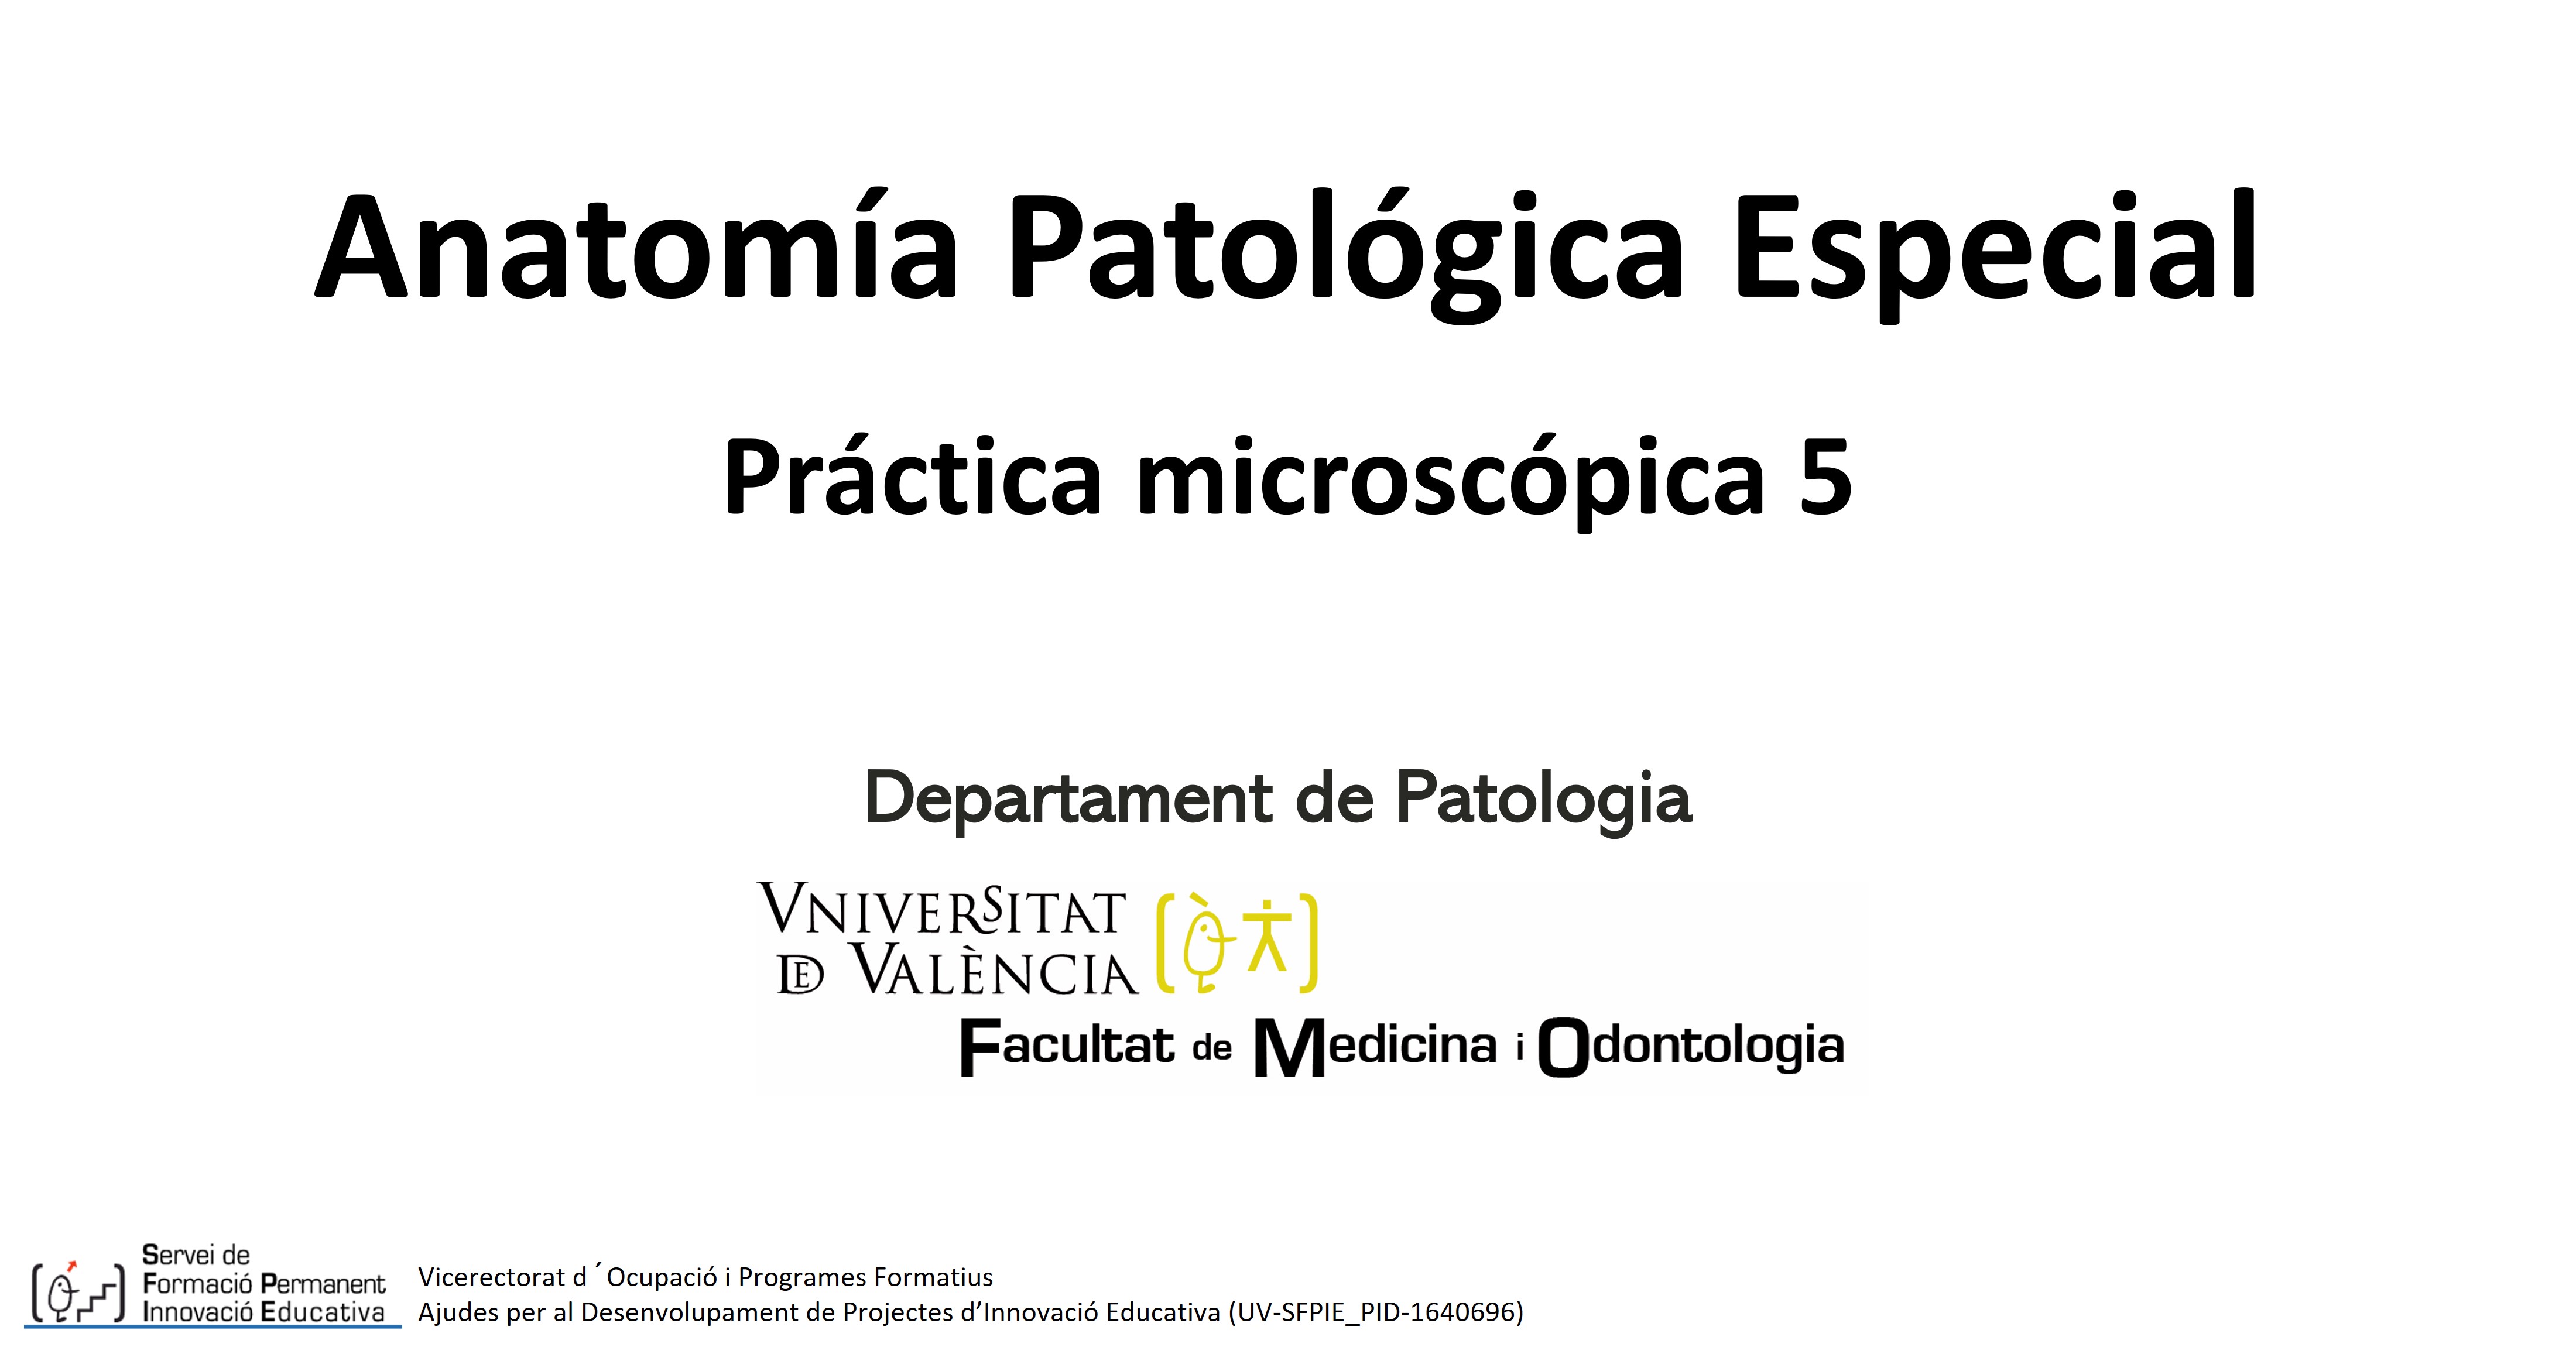 Anatomía Patológica Especial - Práctica microscópica 5